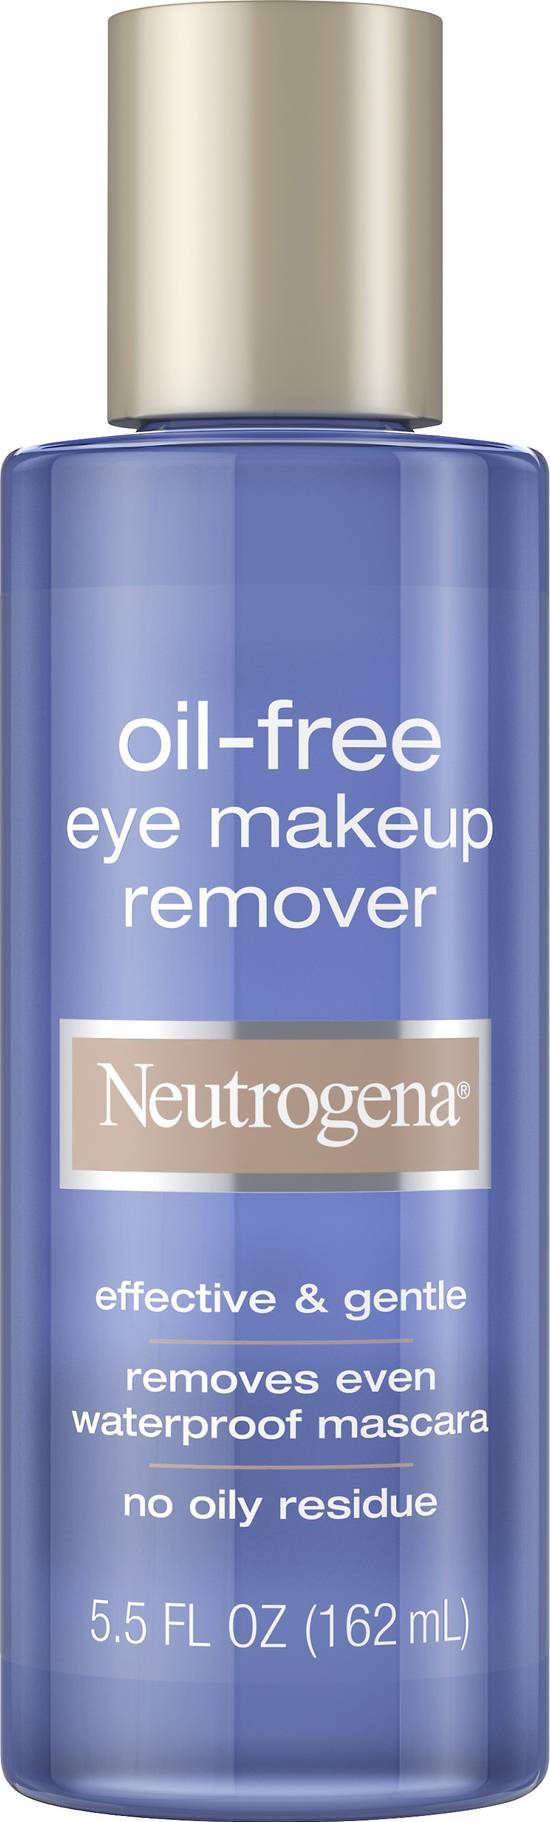 Neutrogena Oil Free Eye Makeup Remover